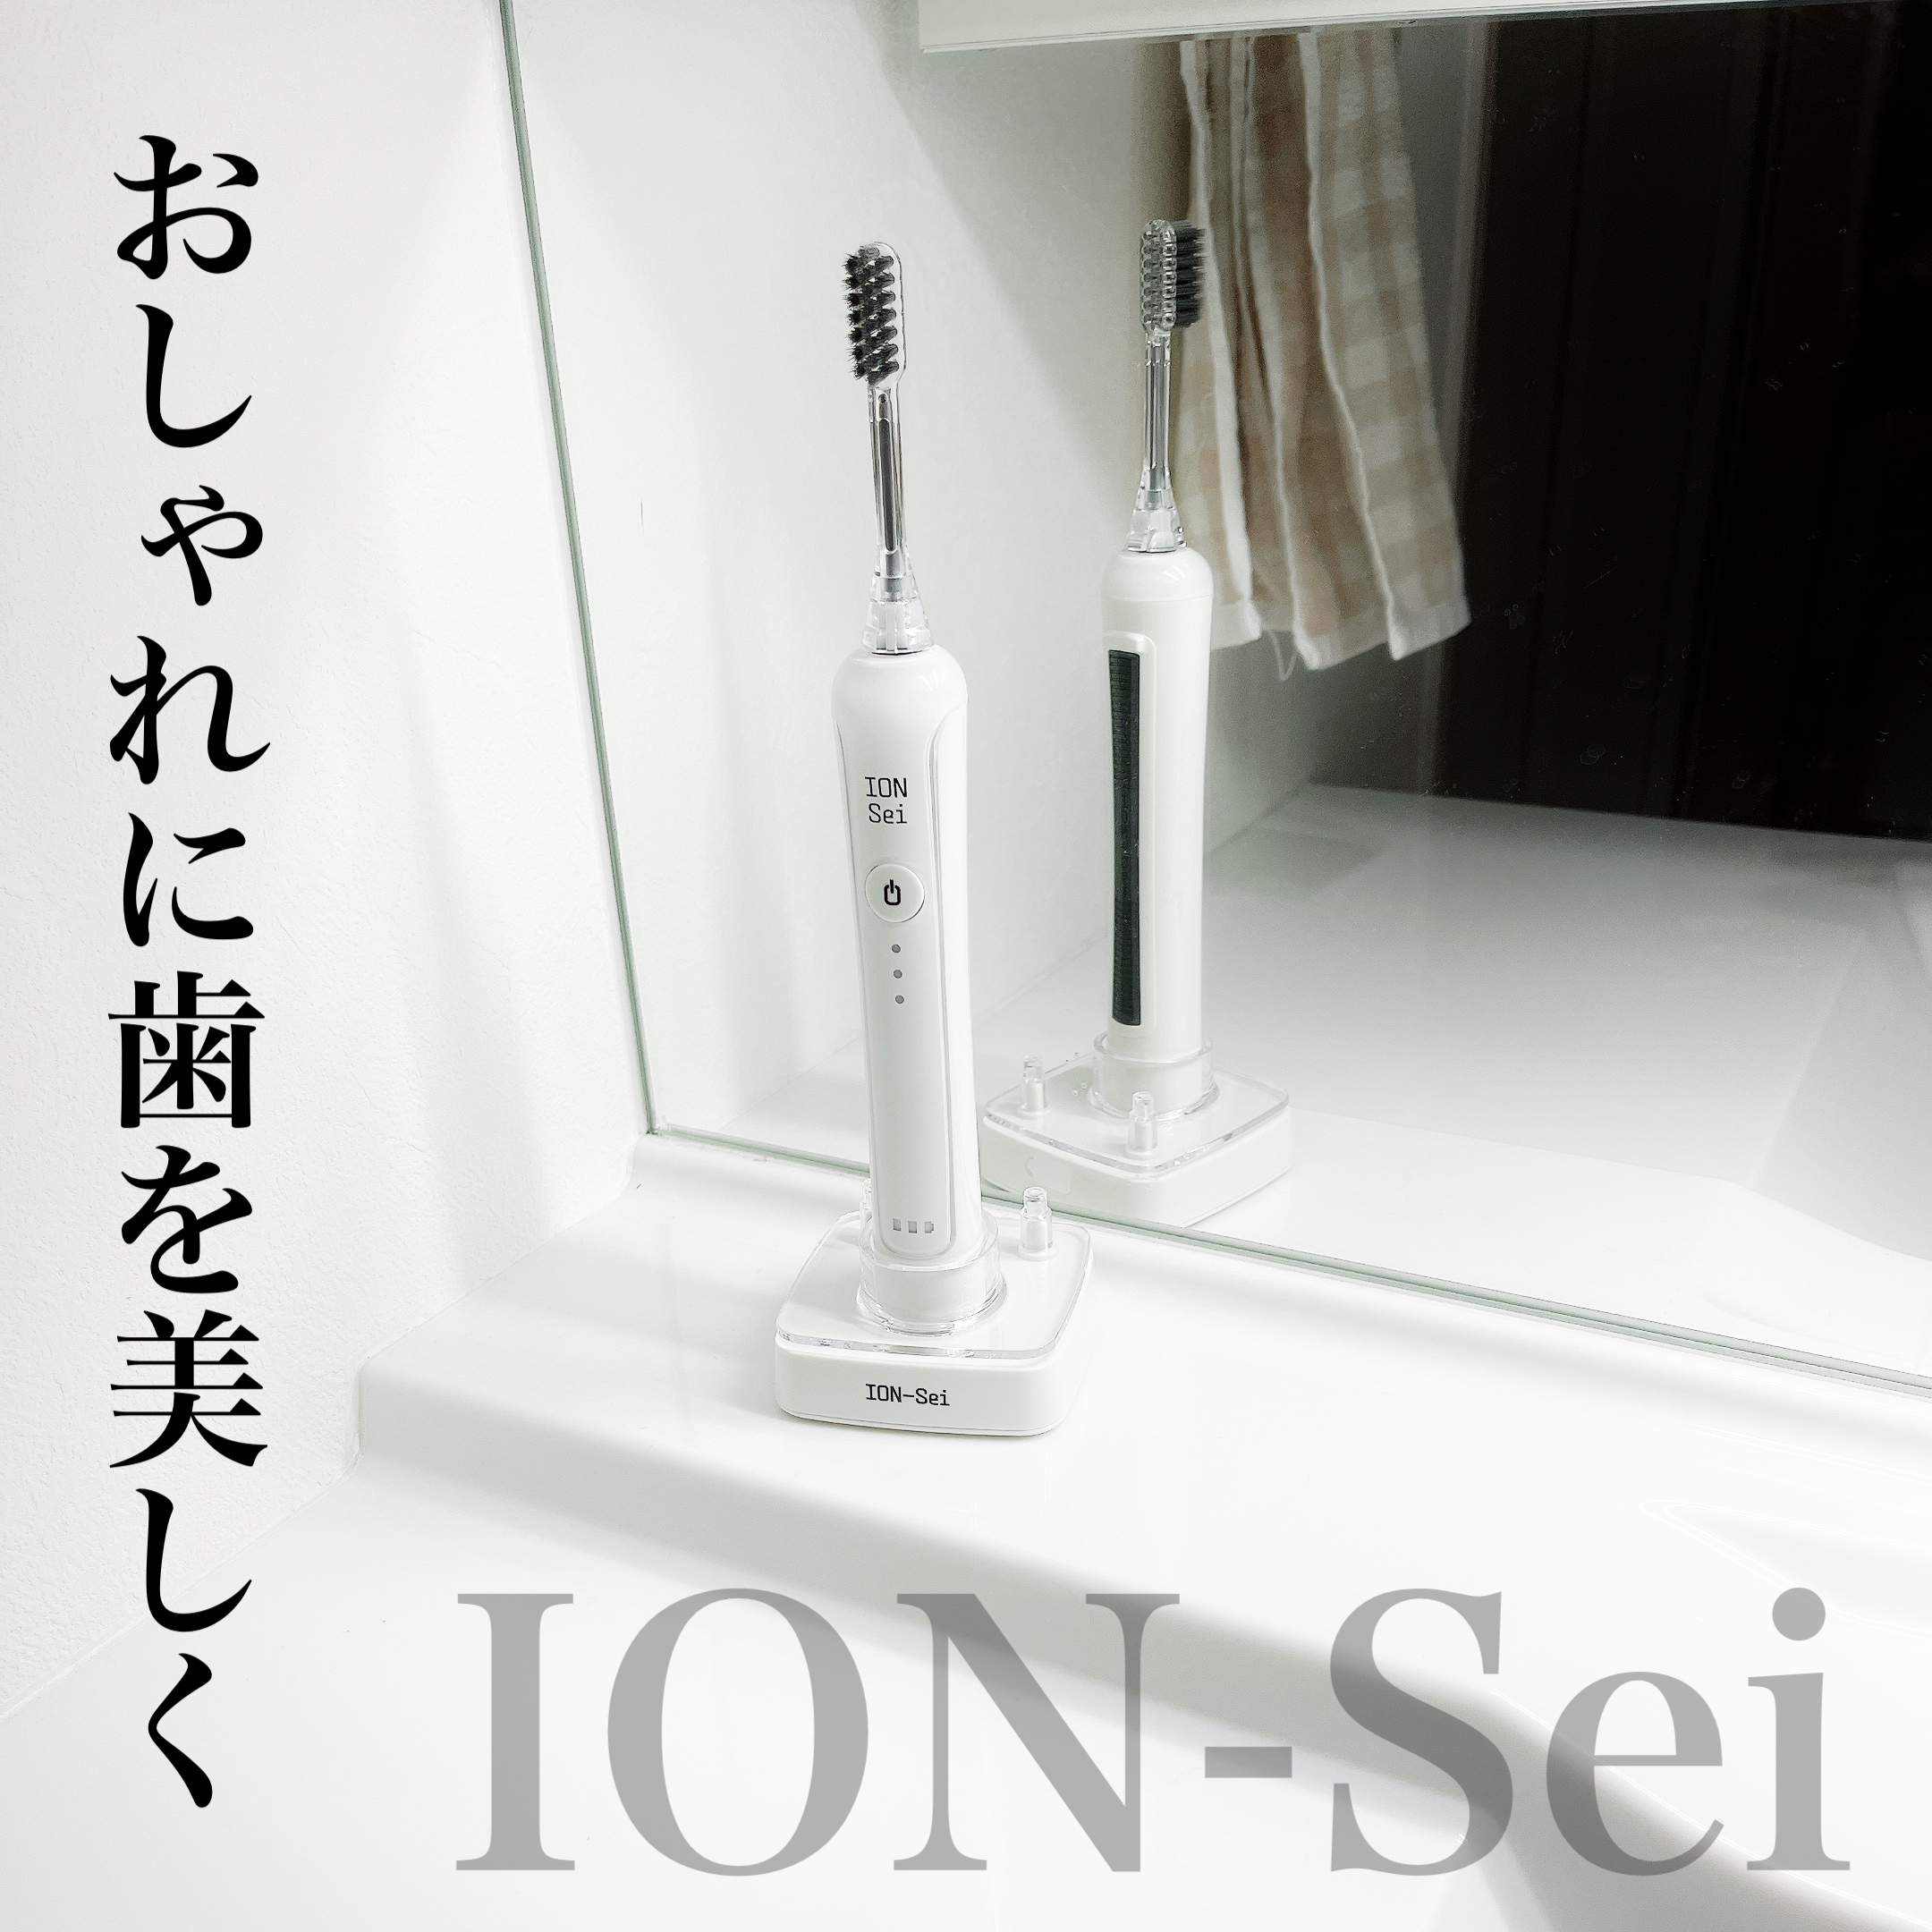 ION-Sei(イオン セイ) 電動歯ブラシの良い点・メリットに関するまみやこさんの口コミ画像1